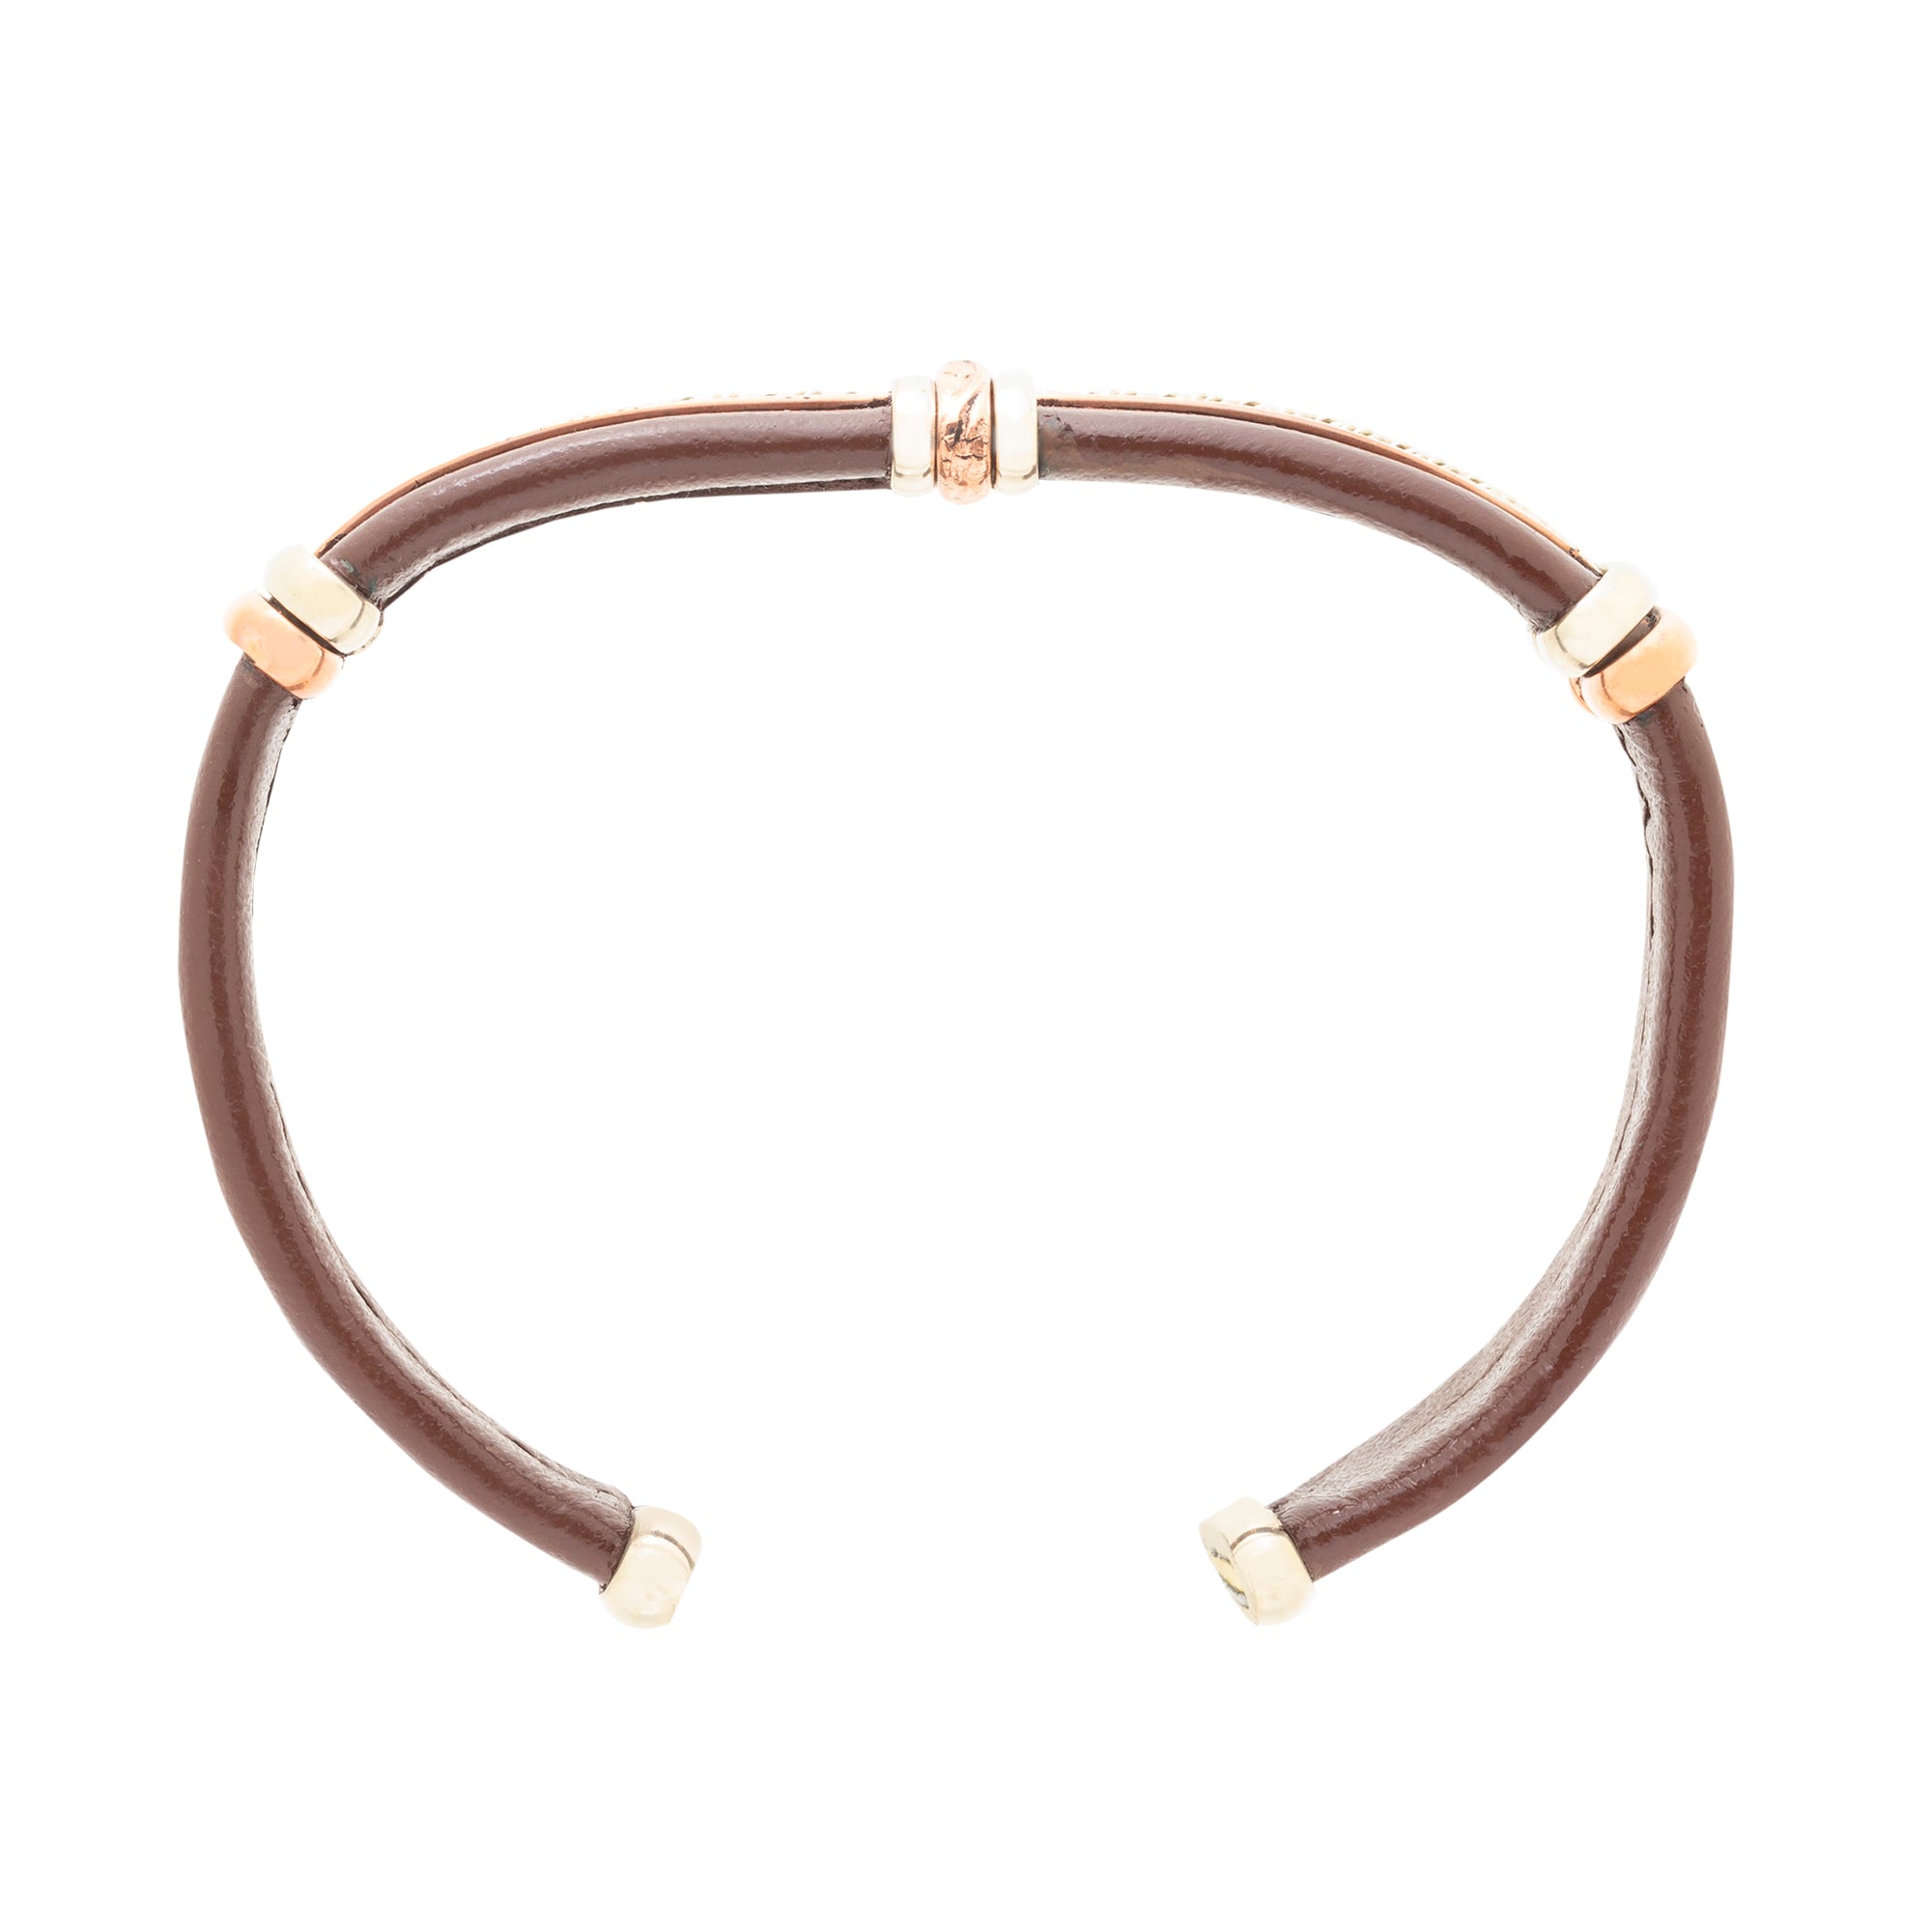 BR.ULB.0407 - Men's Leather Bracelet, Brown